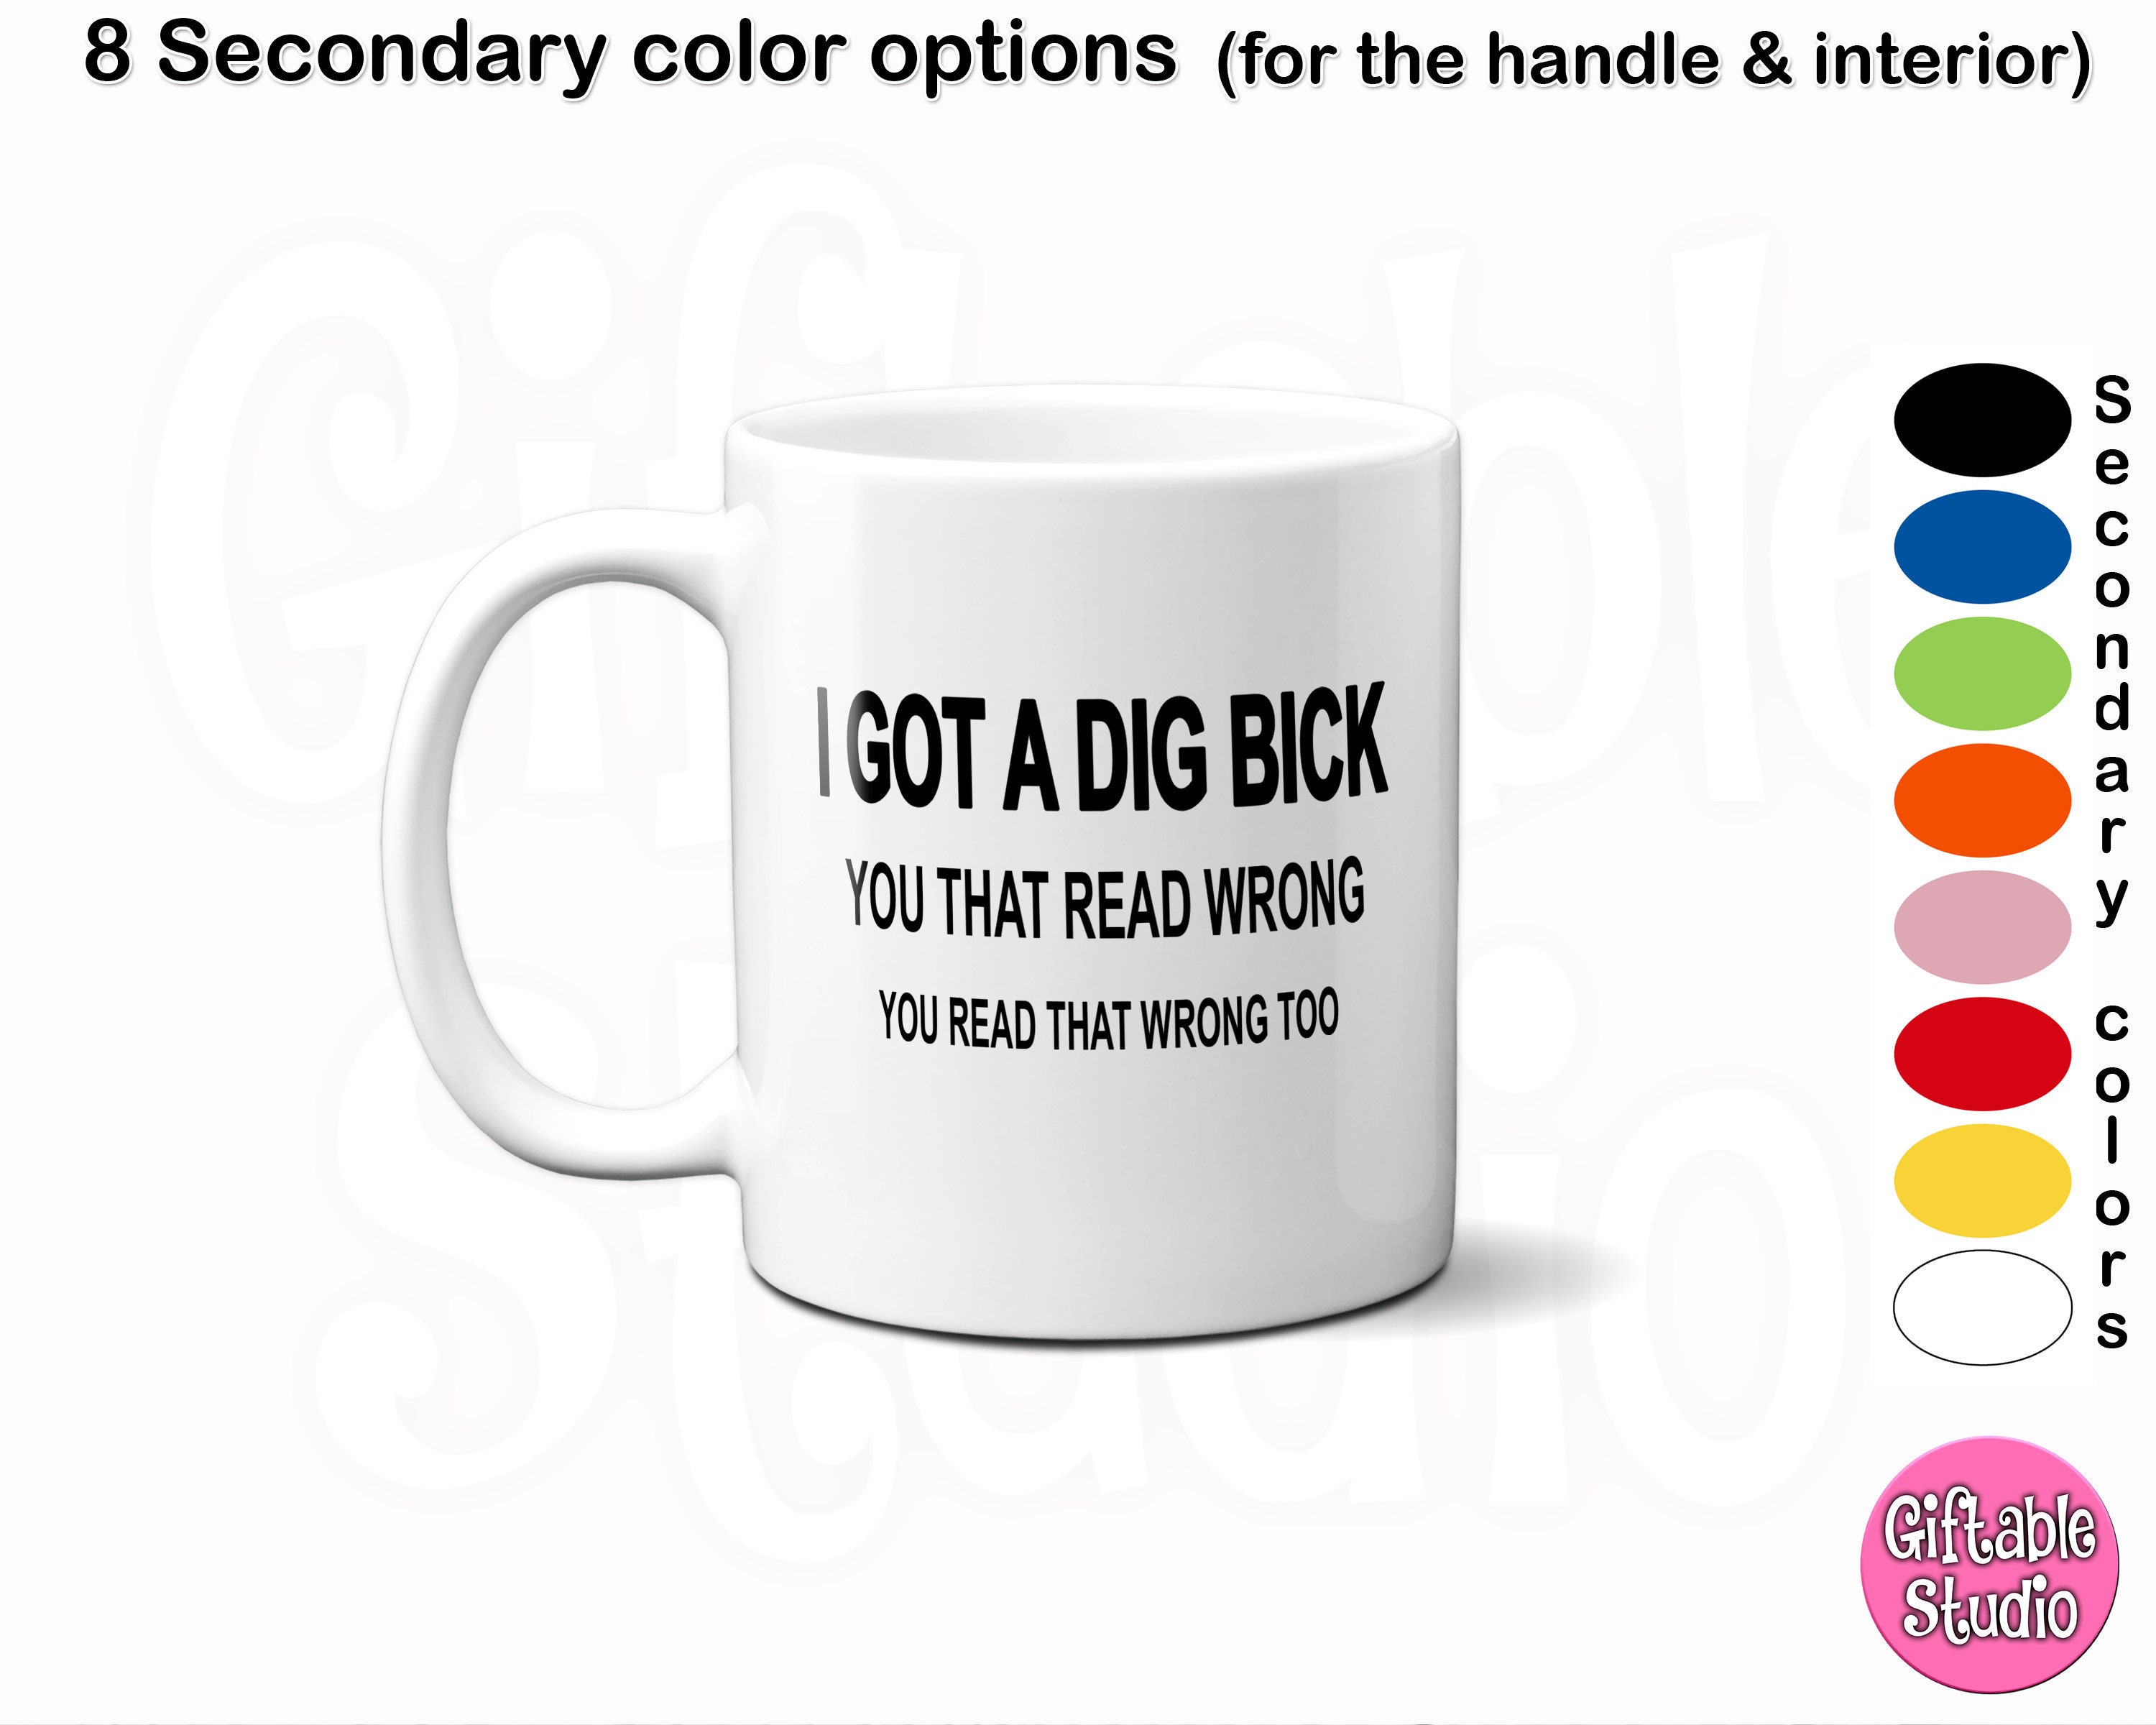 Big Dick Coffee Mug Sarcastic Mug Funny Vulgar Gift Adult photo